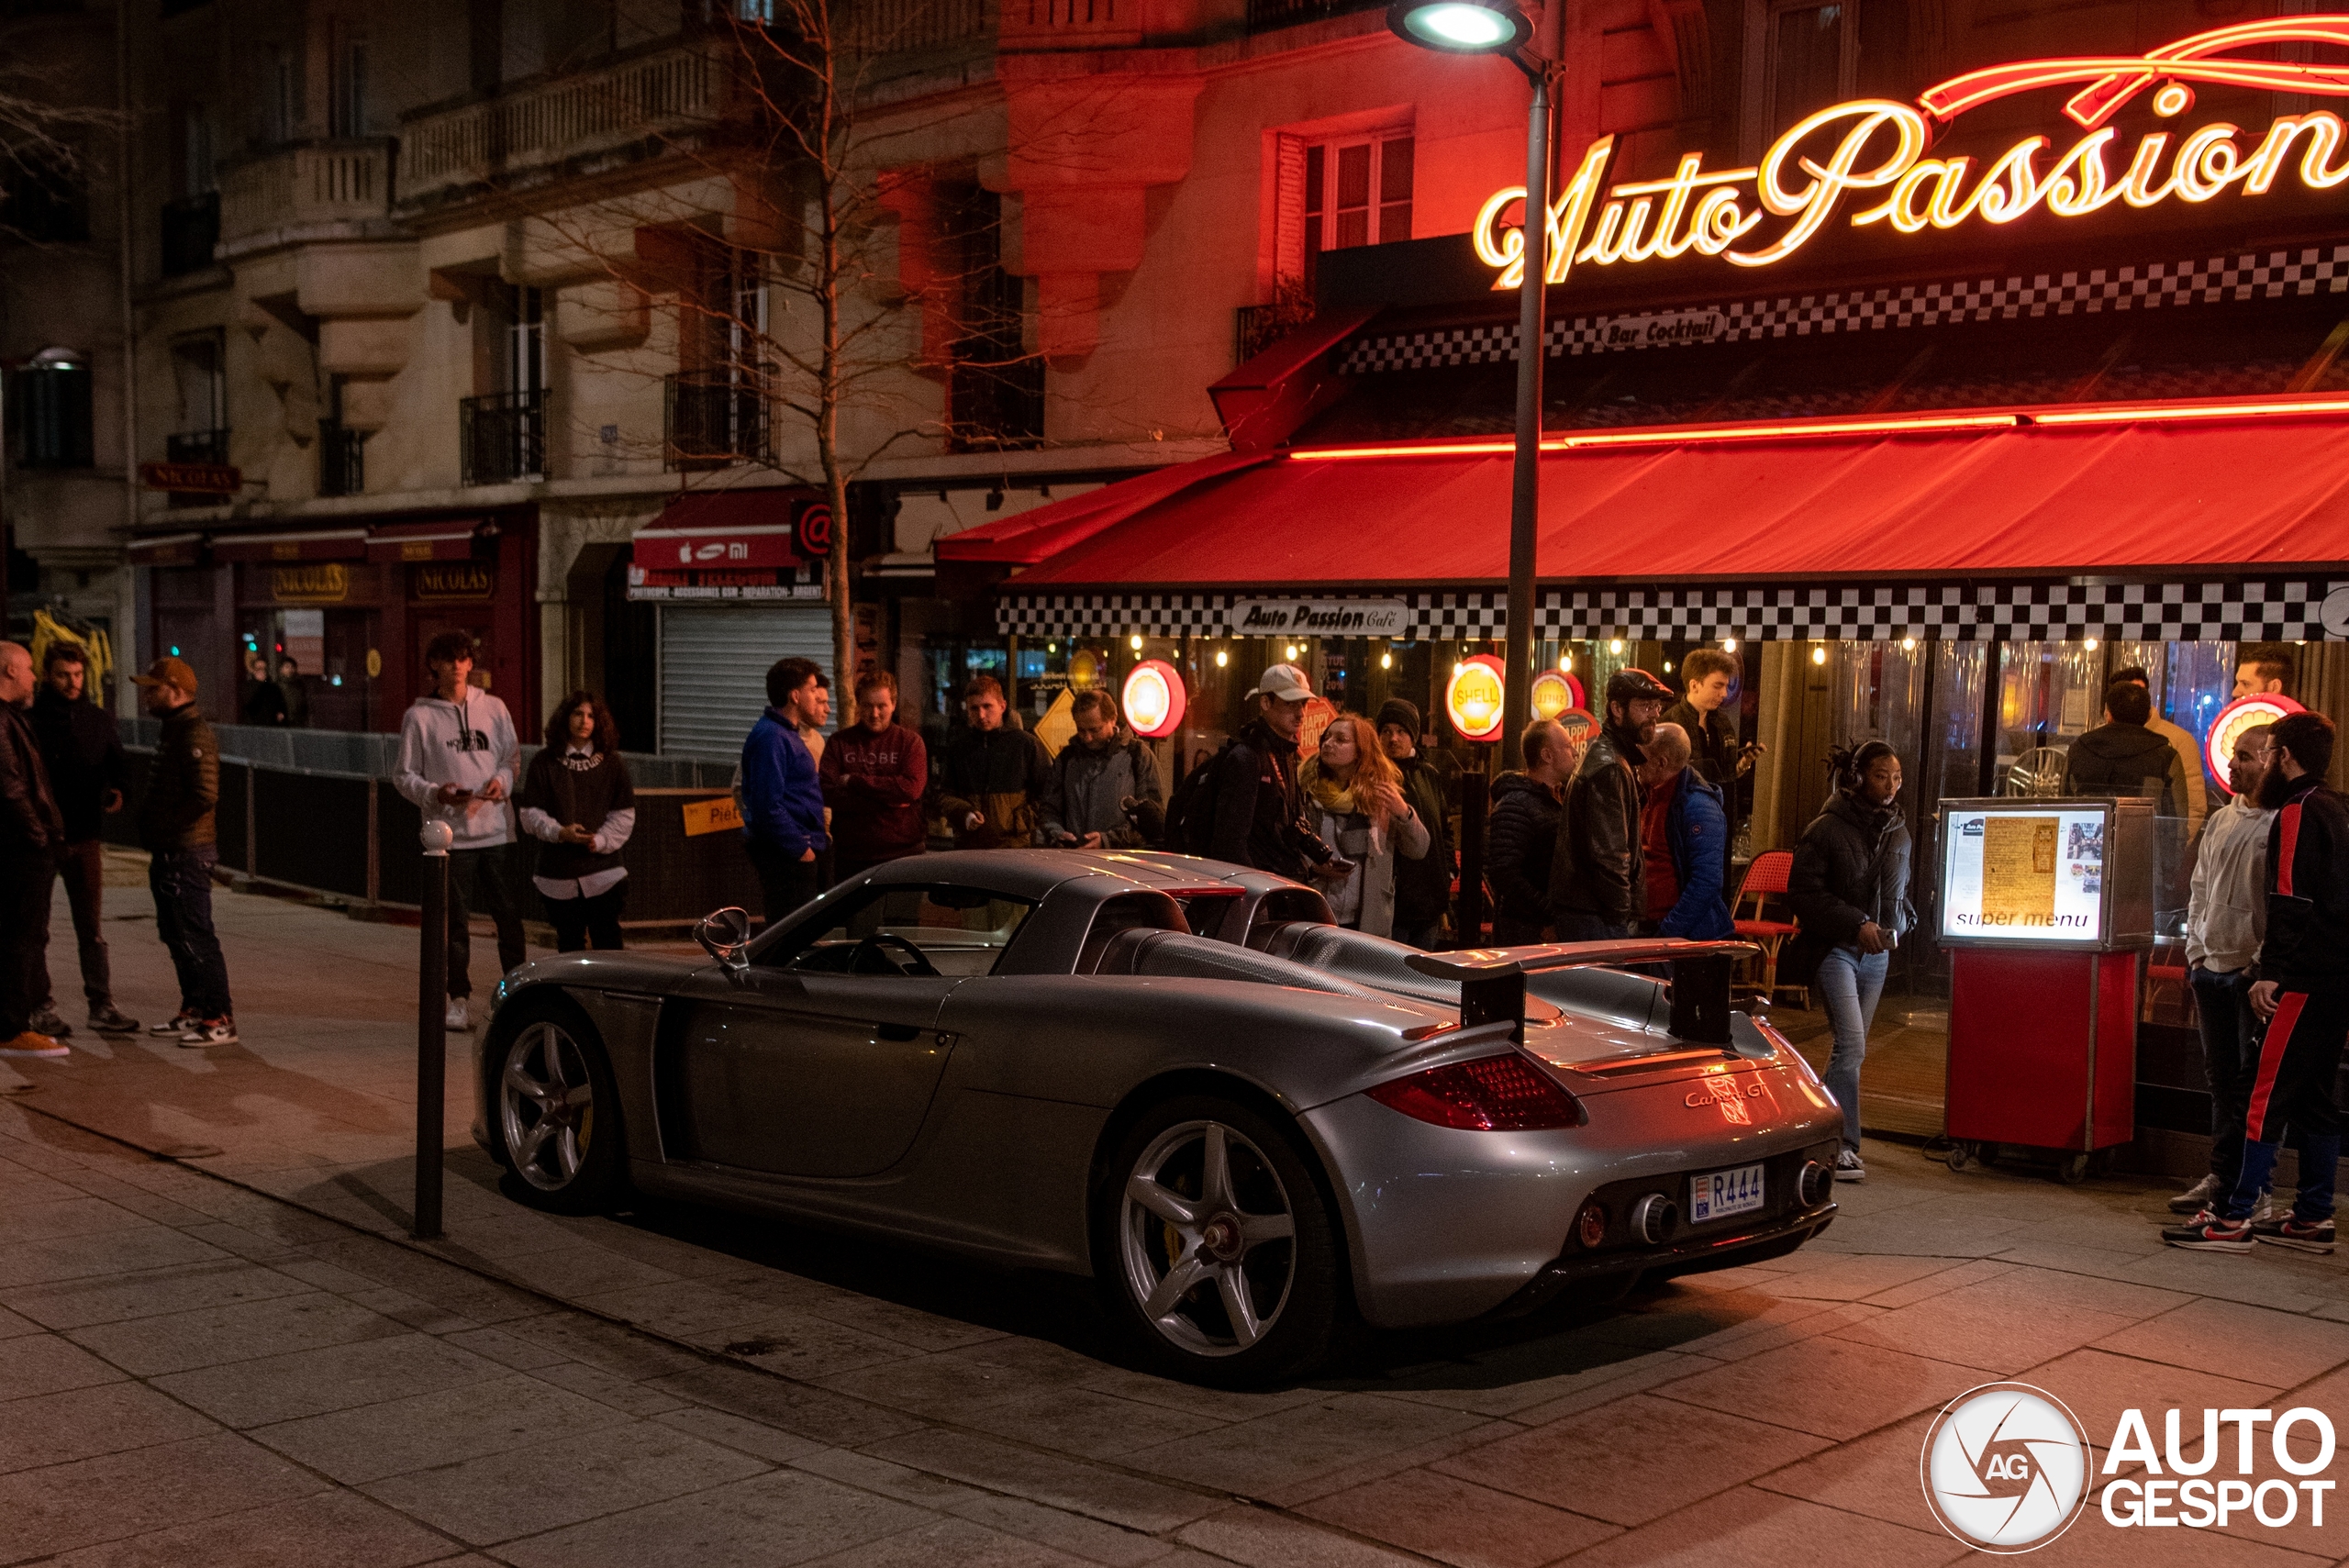 Legenda Carrera GT pojavljuje se u Parizu